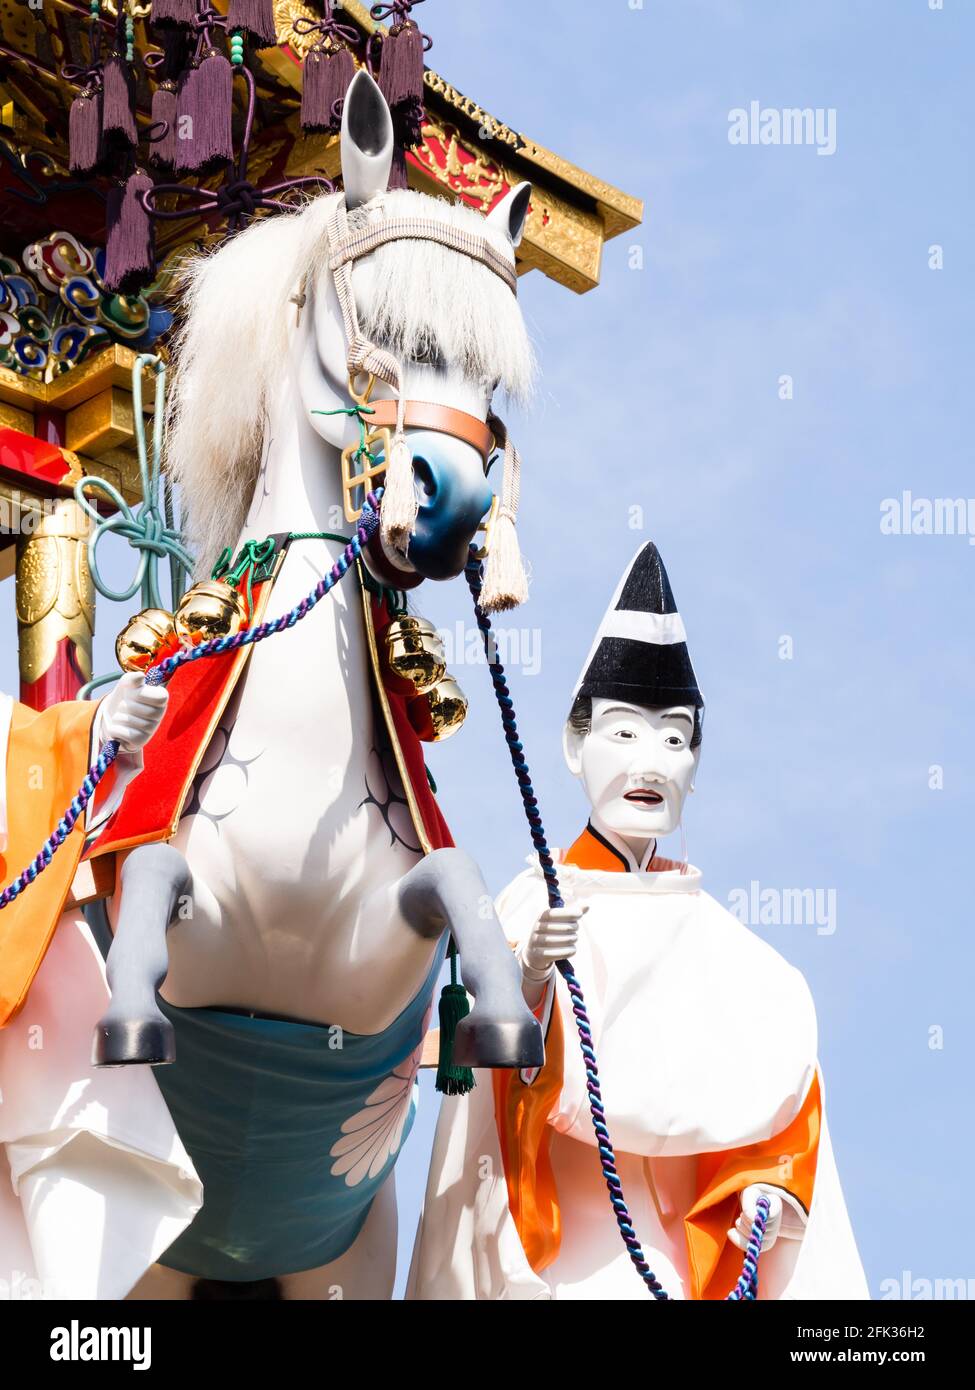 Takayama, Japon - 9 octobre 2015 : figurine de poupée en bois au-dessus du flotteur décoratif pendant le festival Takayama d'automne Banque D'Images